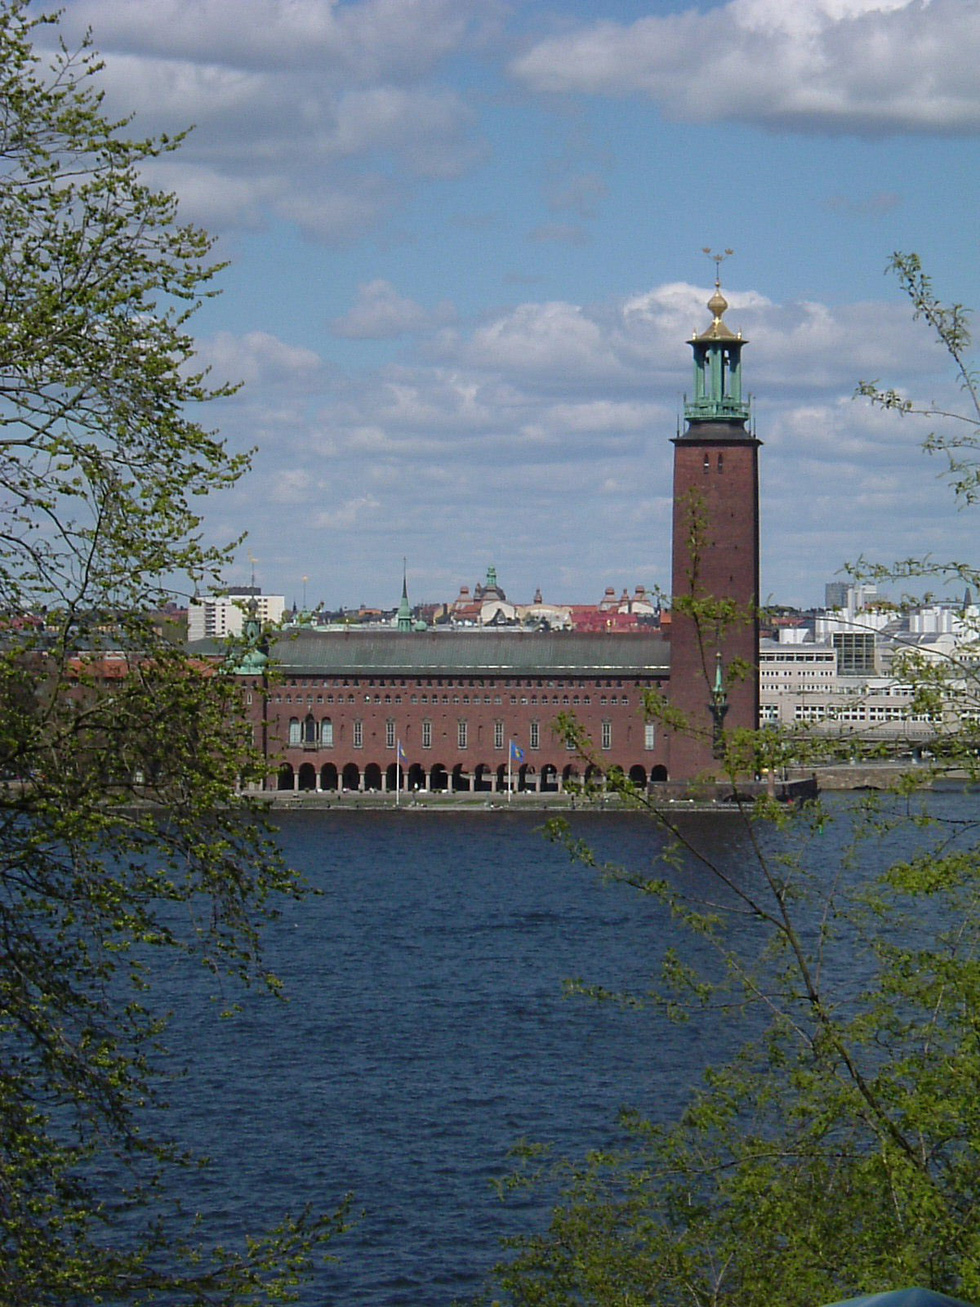 Đến Stockholm ngắm thành phố trên biển - Ảnh 8.